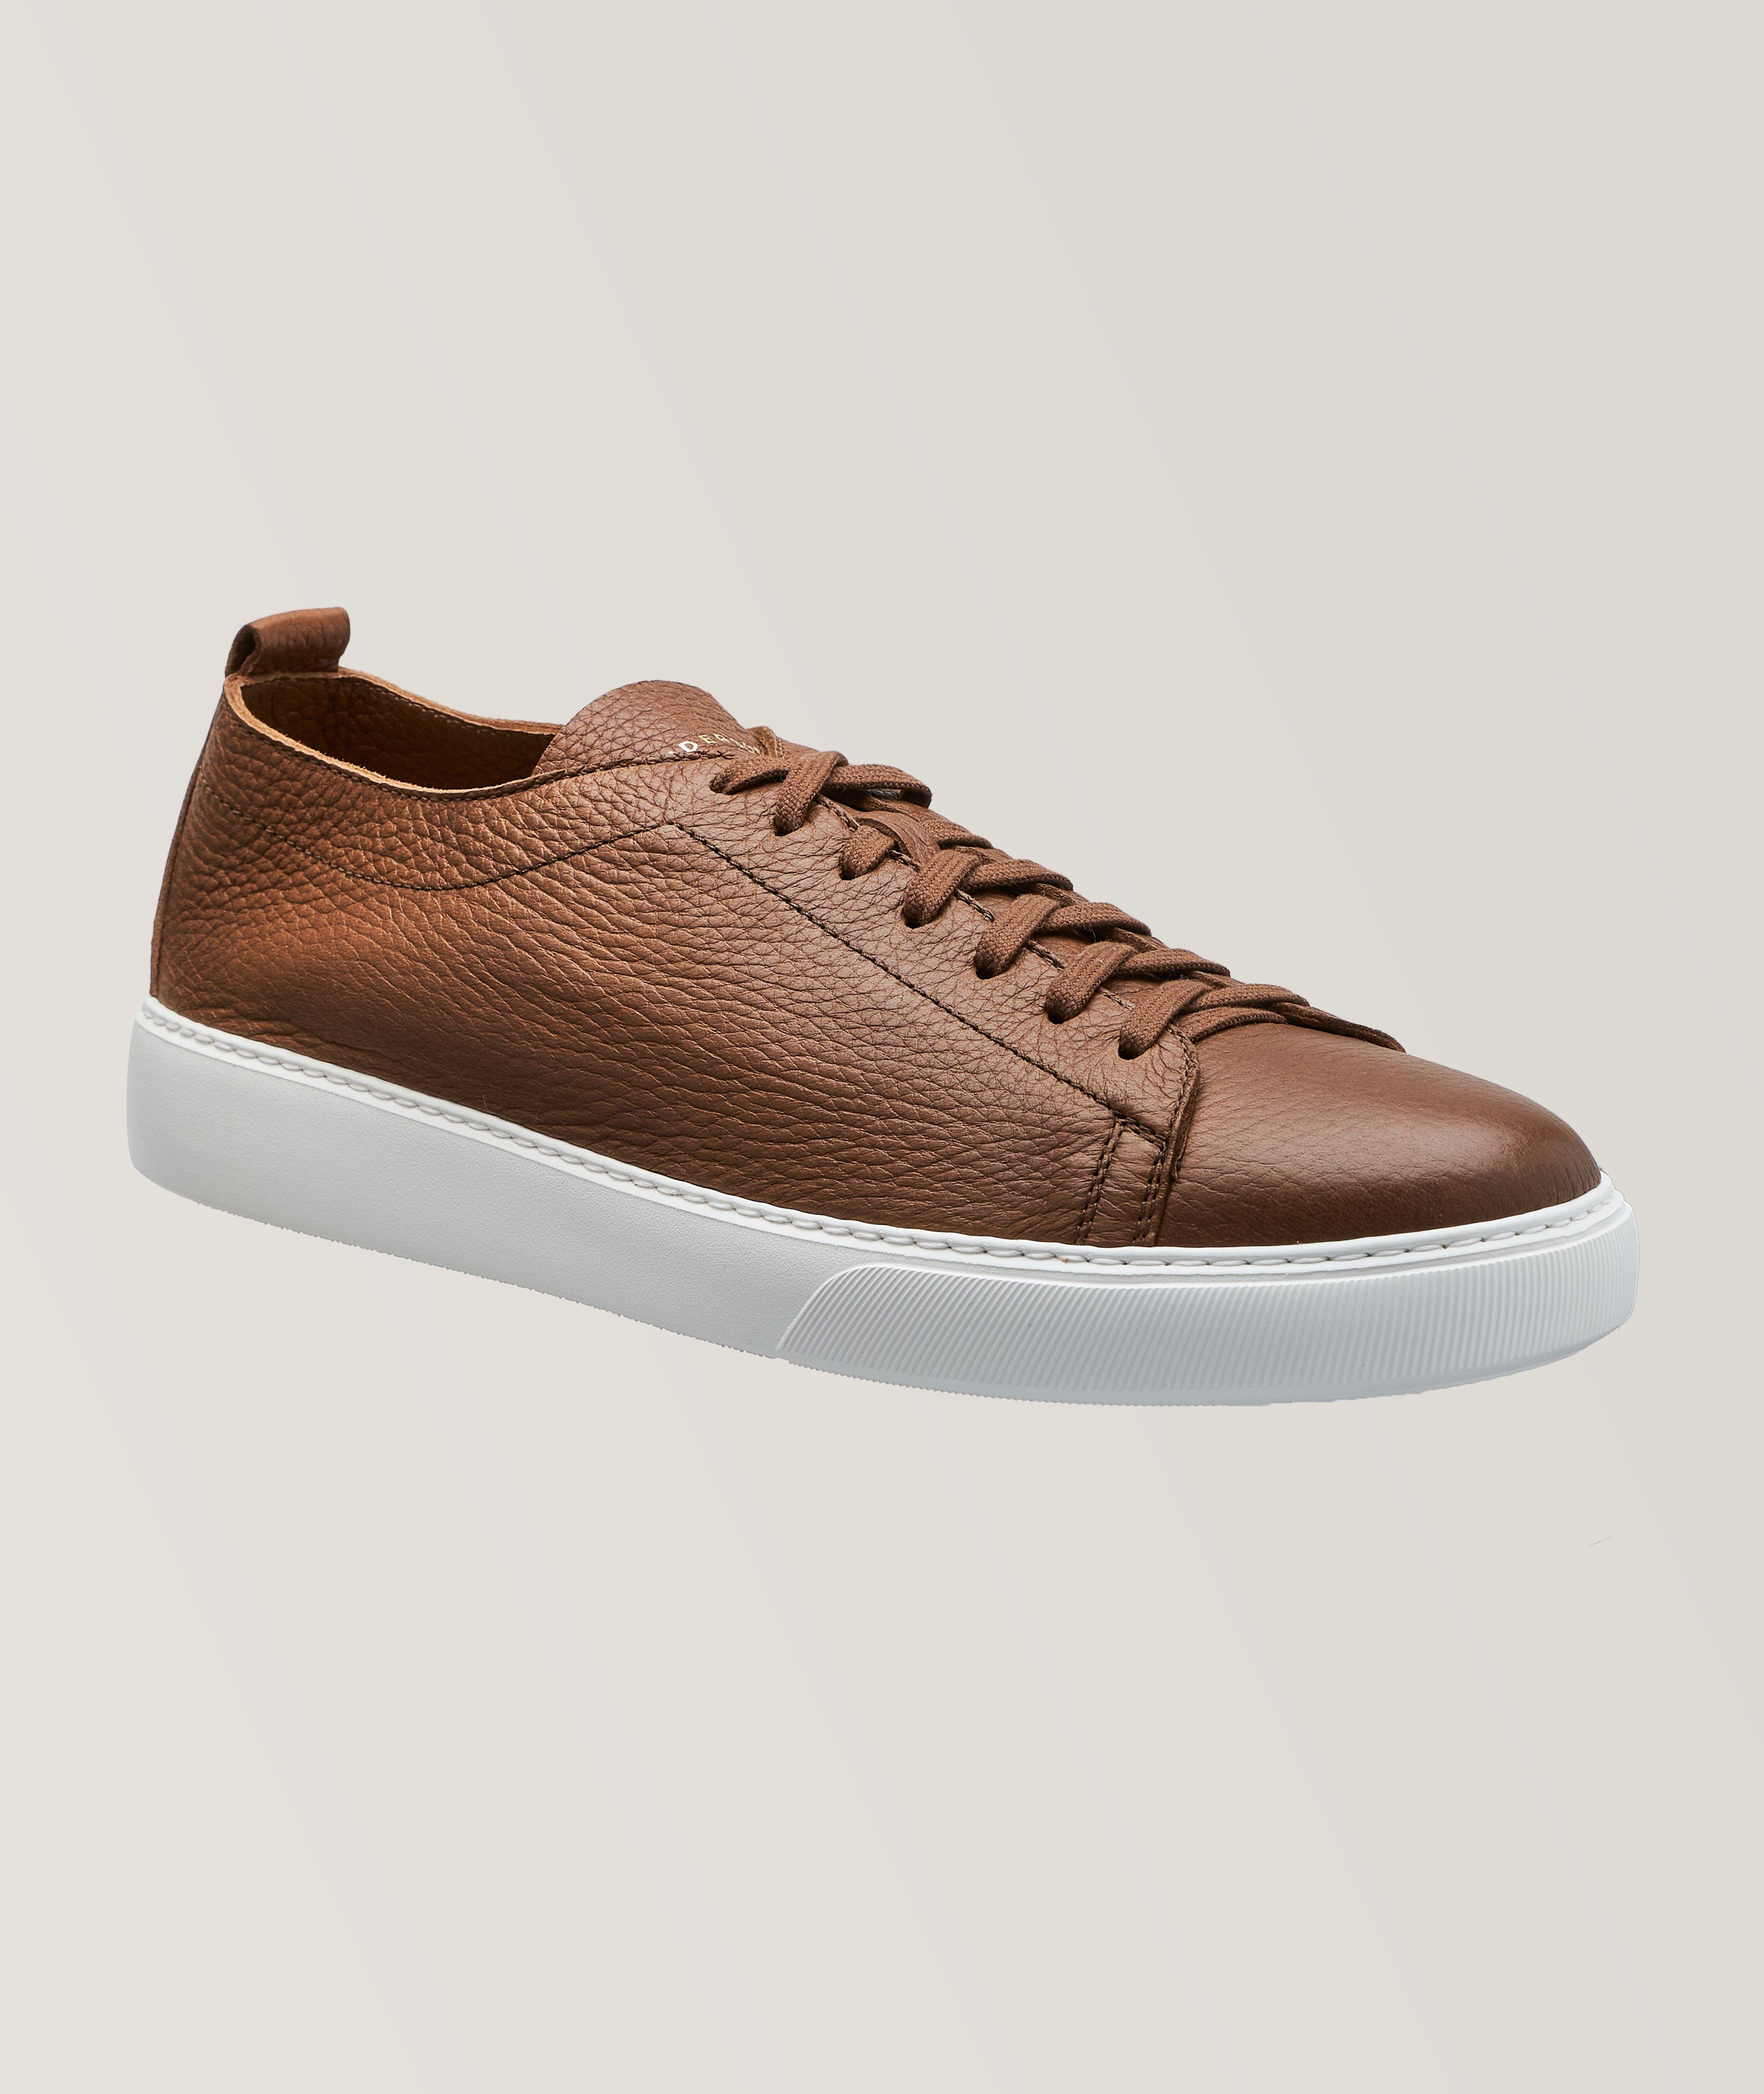 Henderson Grain Leather Byron Sneaker | Sneakers | Harry Rosen